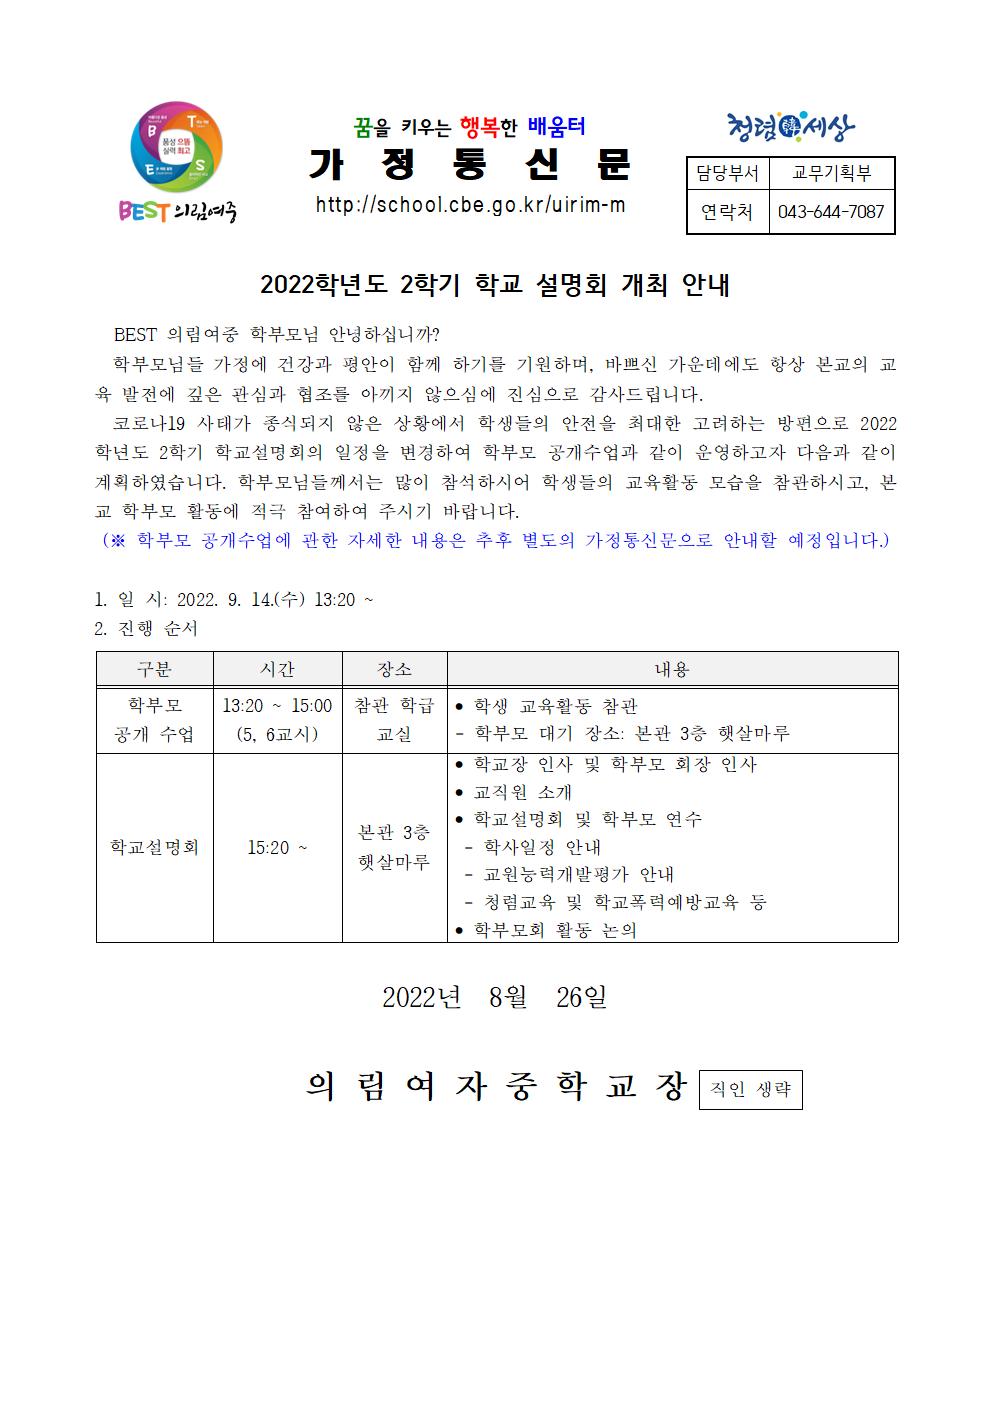 가정통신문-20220826-학교설명회 개최 안내001